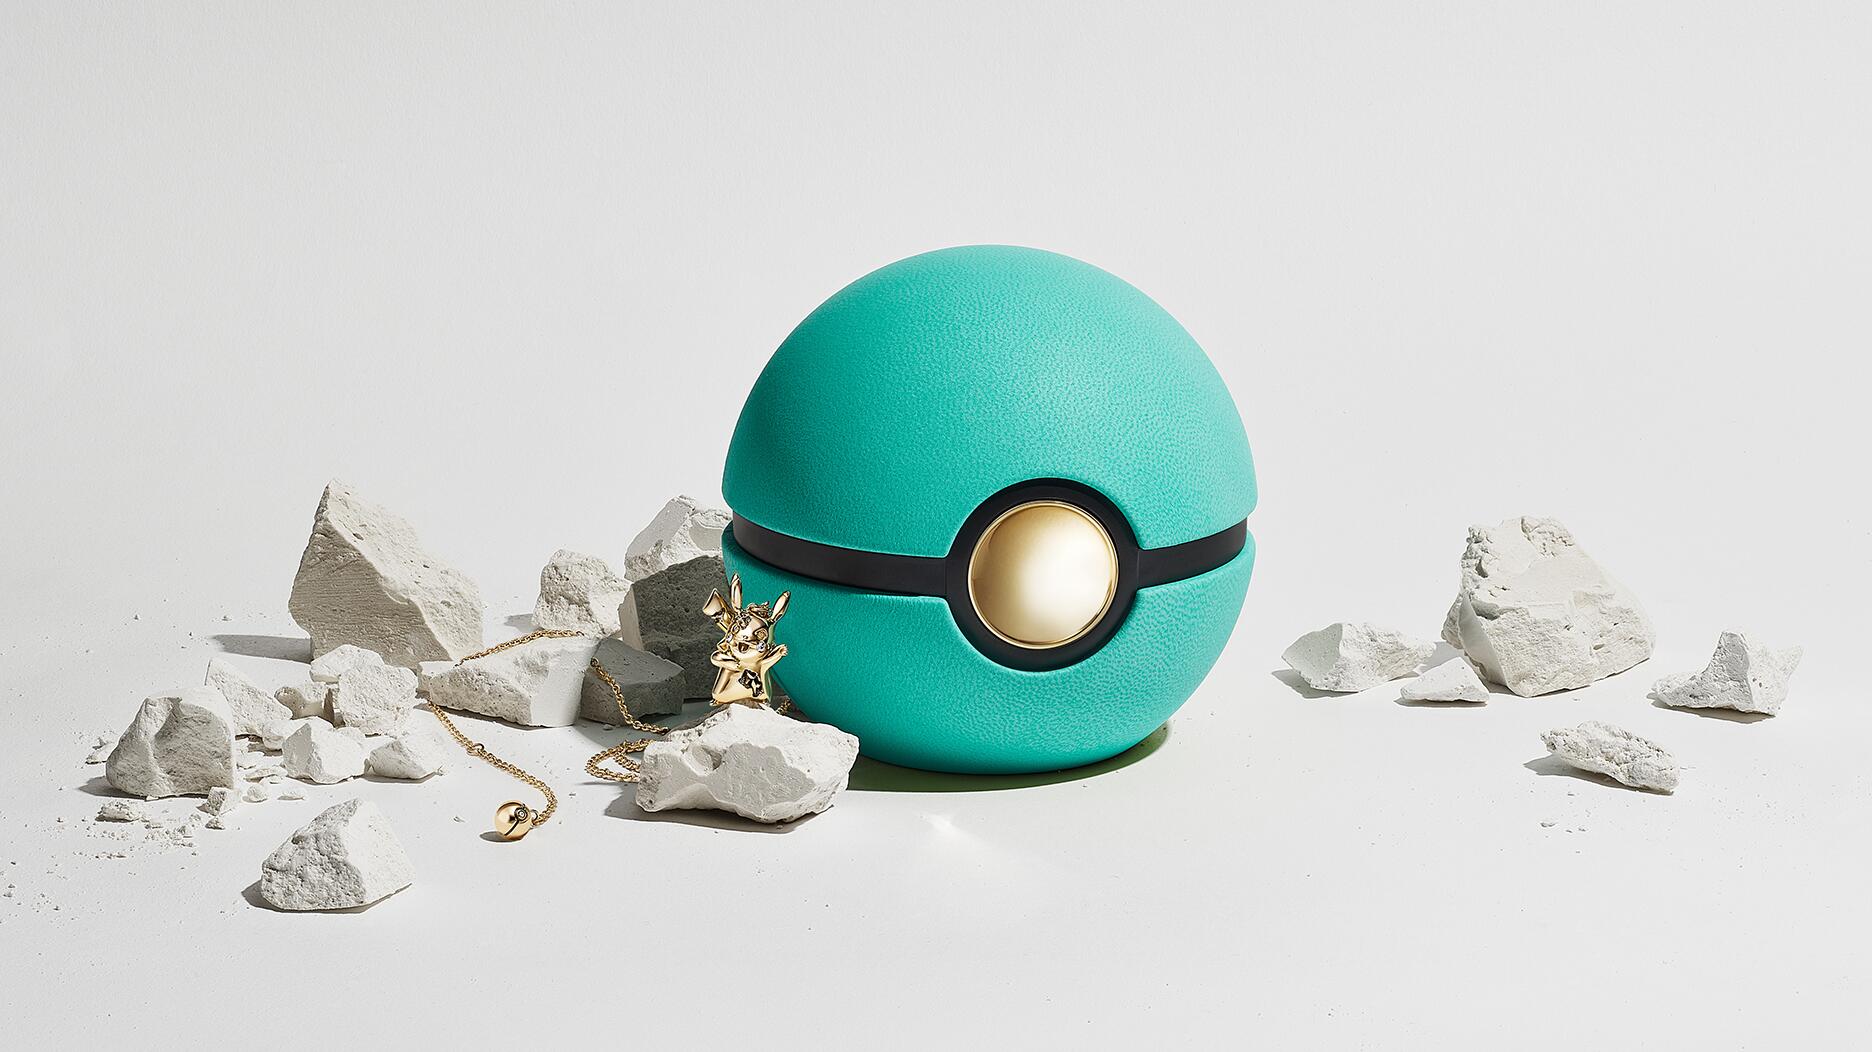 Tiffany Pokémon gold Pikachu pendant in a Poké Ball